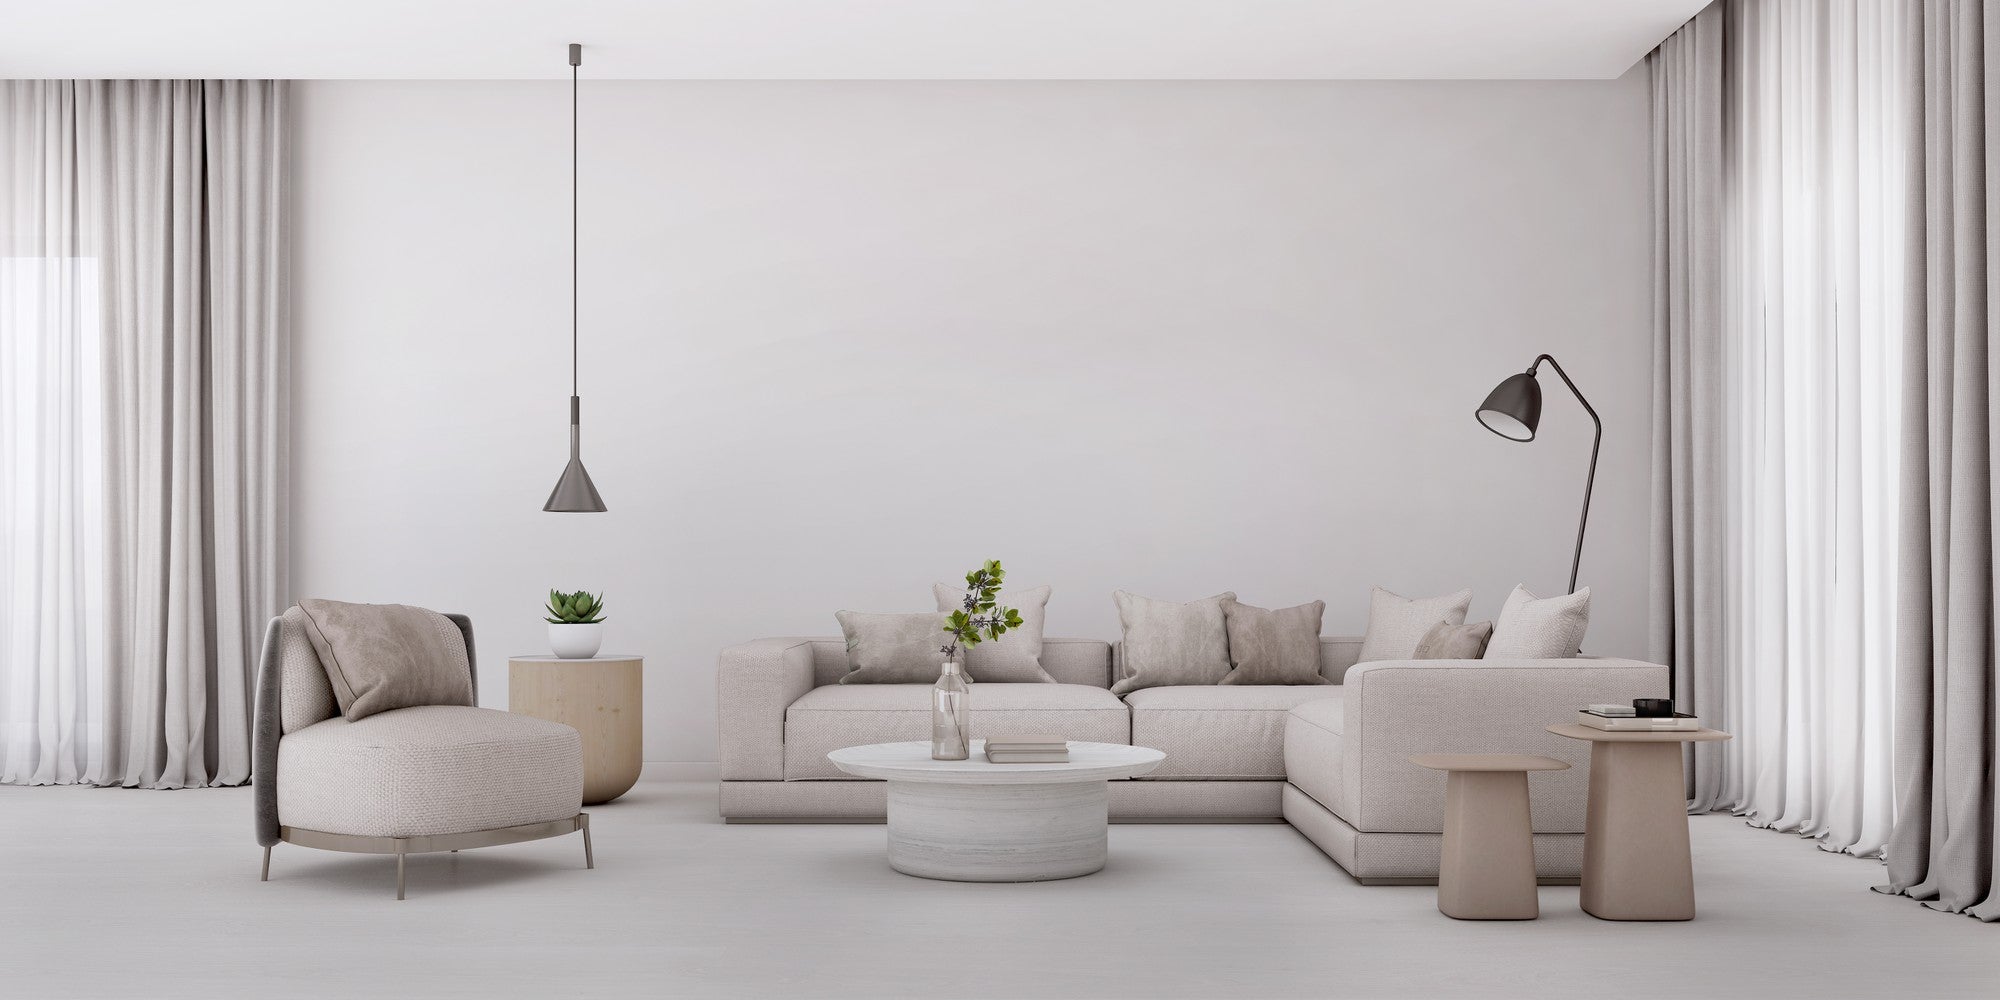 2. Białe meble w mieszkaniu – przestronność i światło